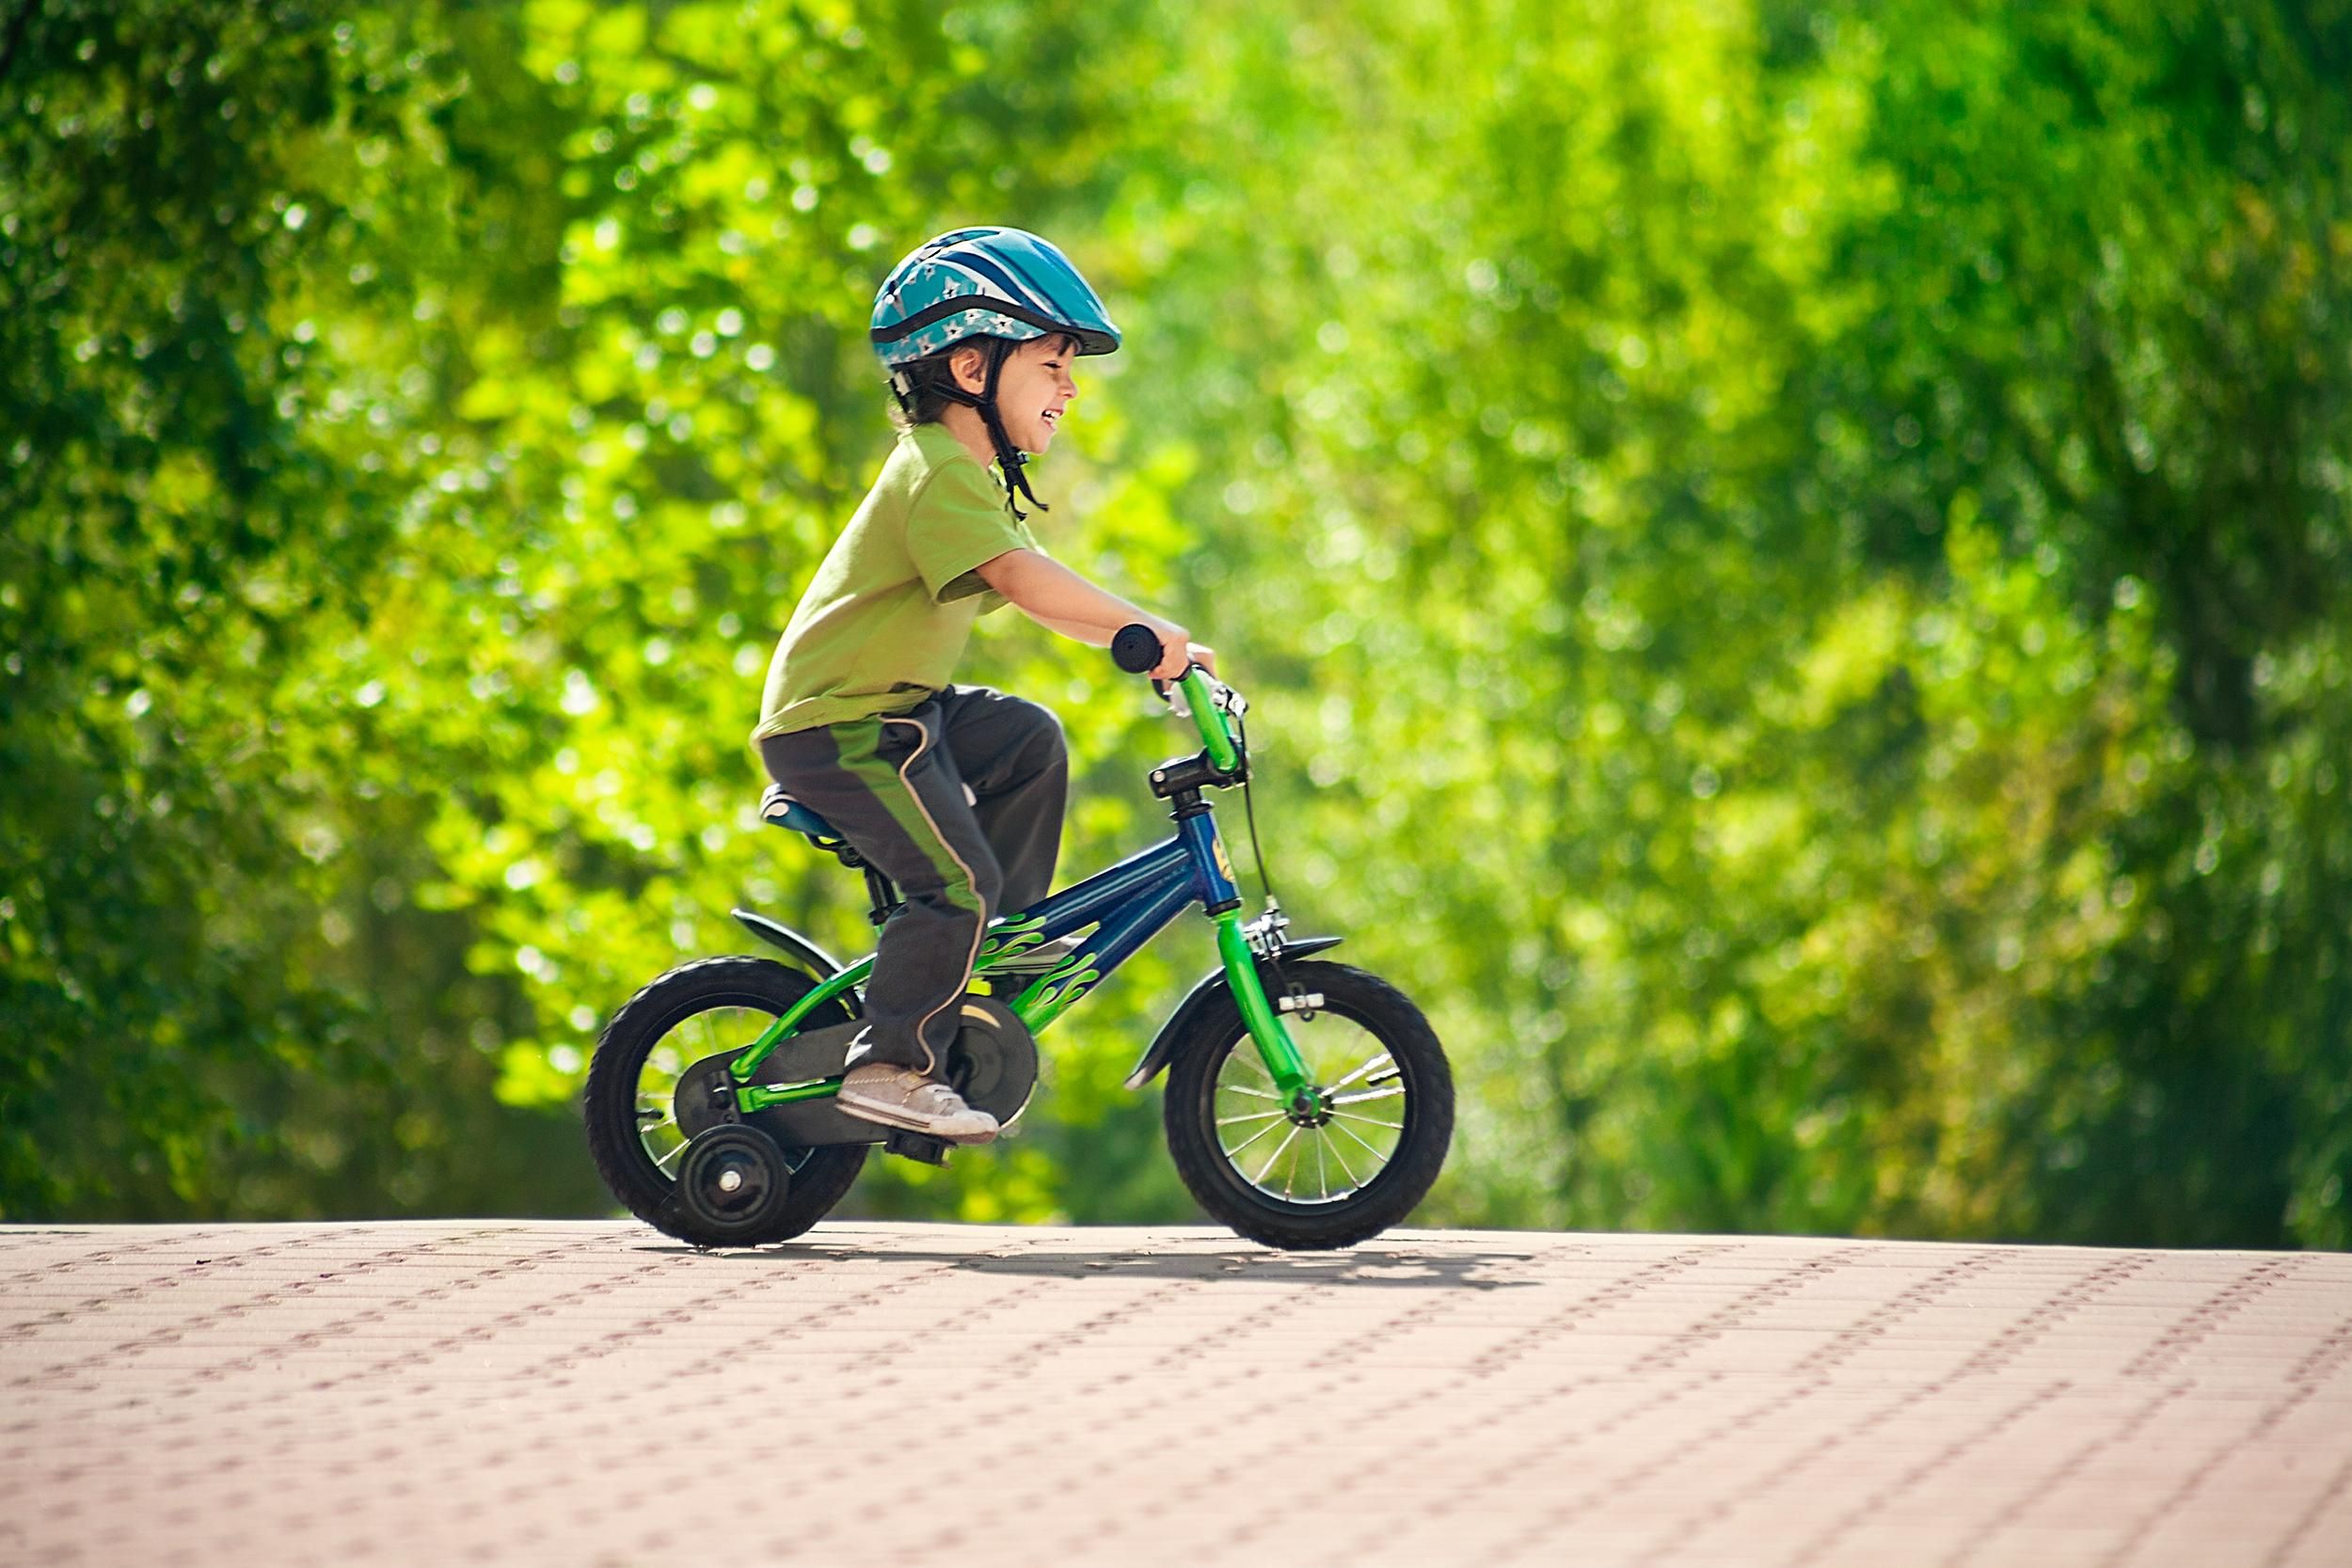 Xiaomi розробили безпечний дитячий велосипед: з'явились фото